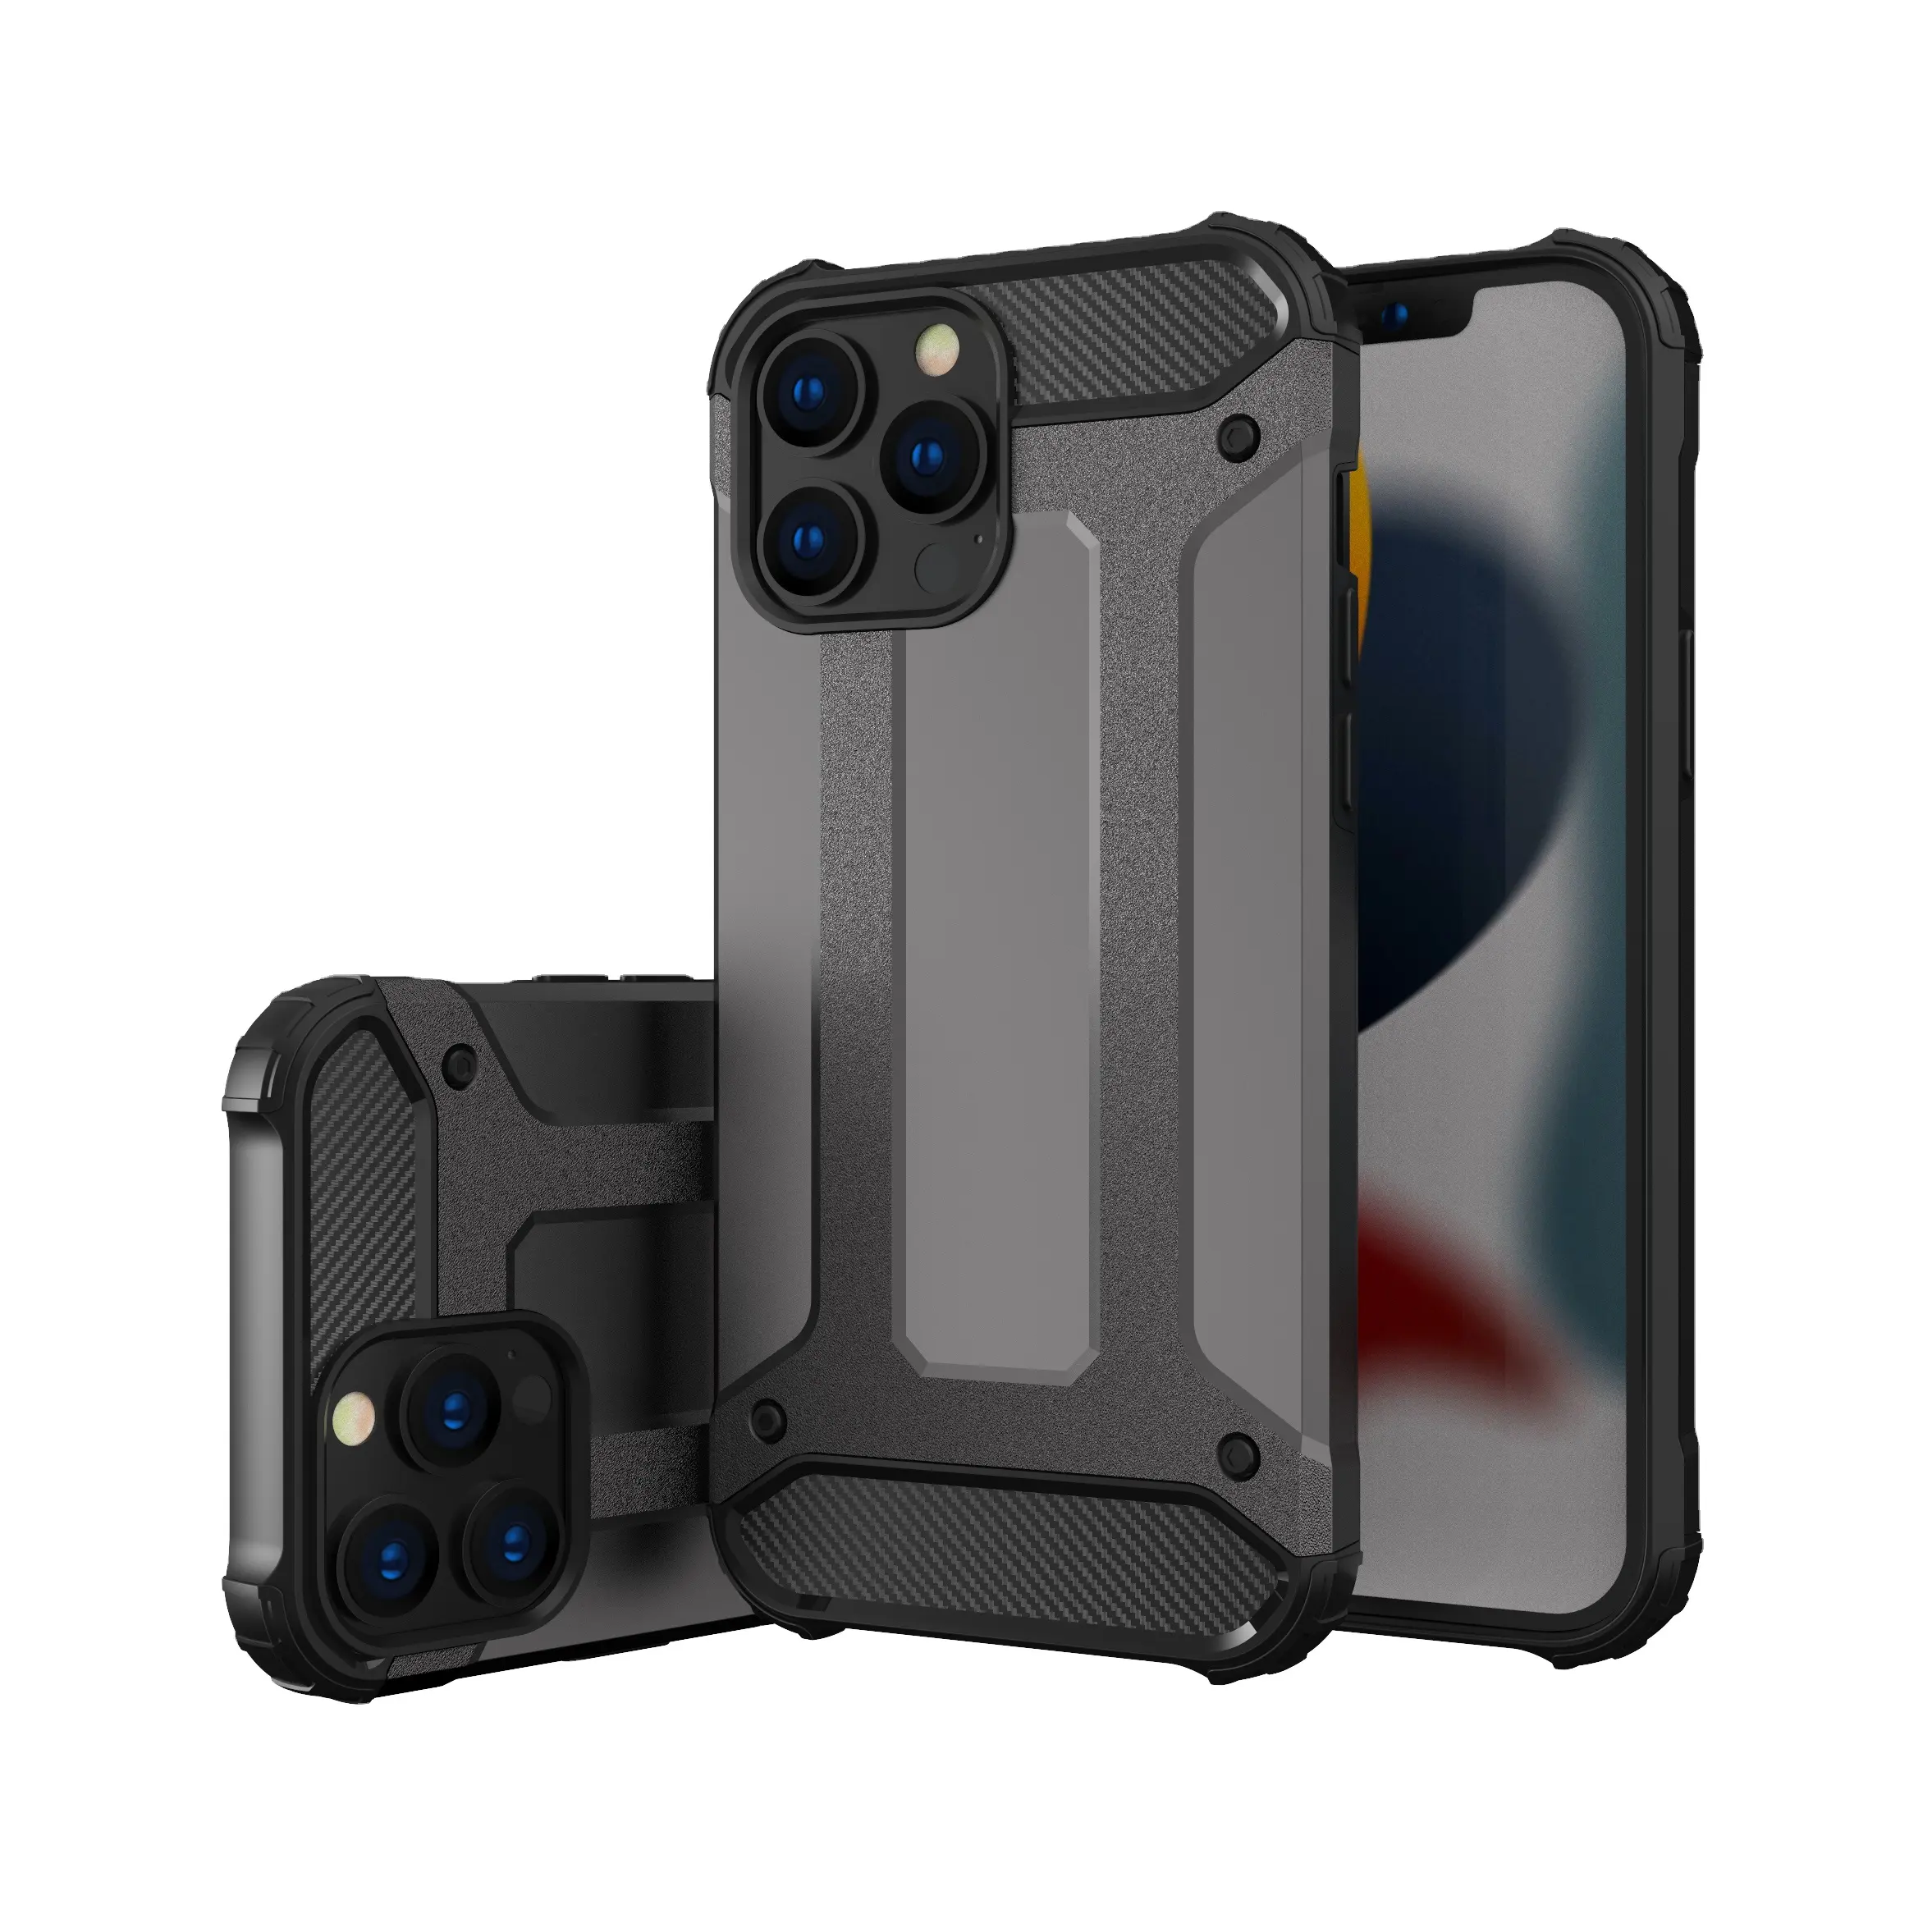 Neue Armor Design Handy hülle für iPhone 13 Pro Max Drop Tested Schutzhülle für iPhone 13 Pro Hülle